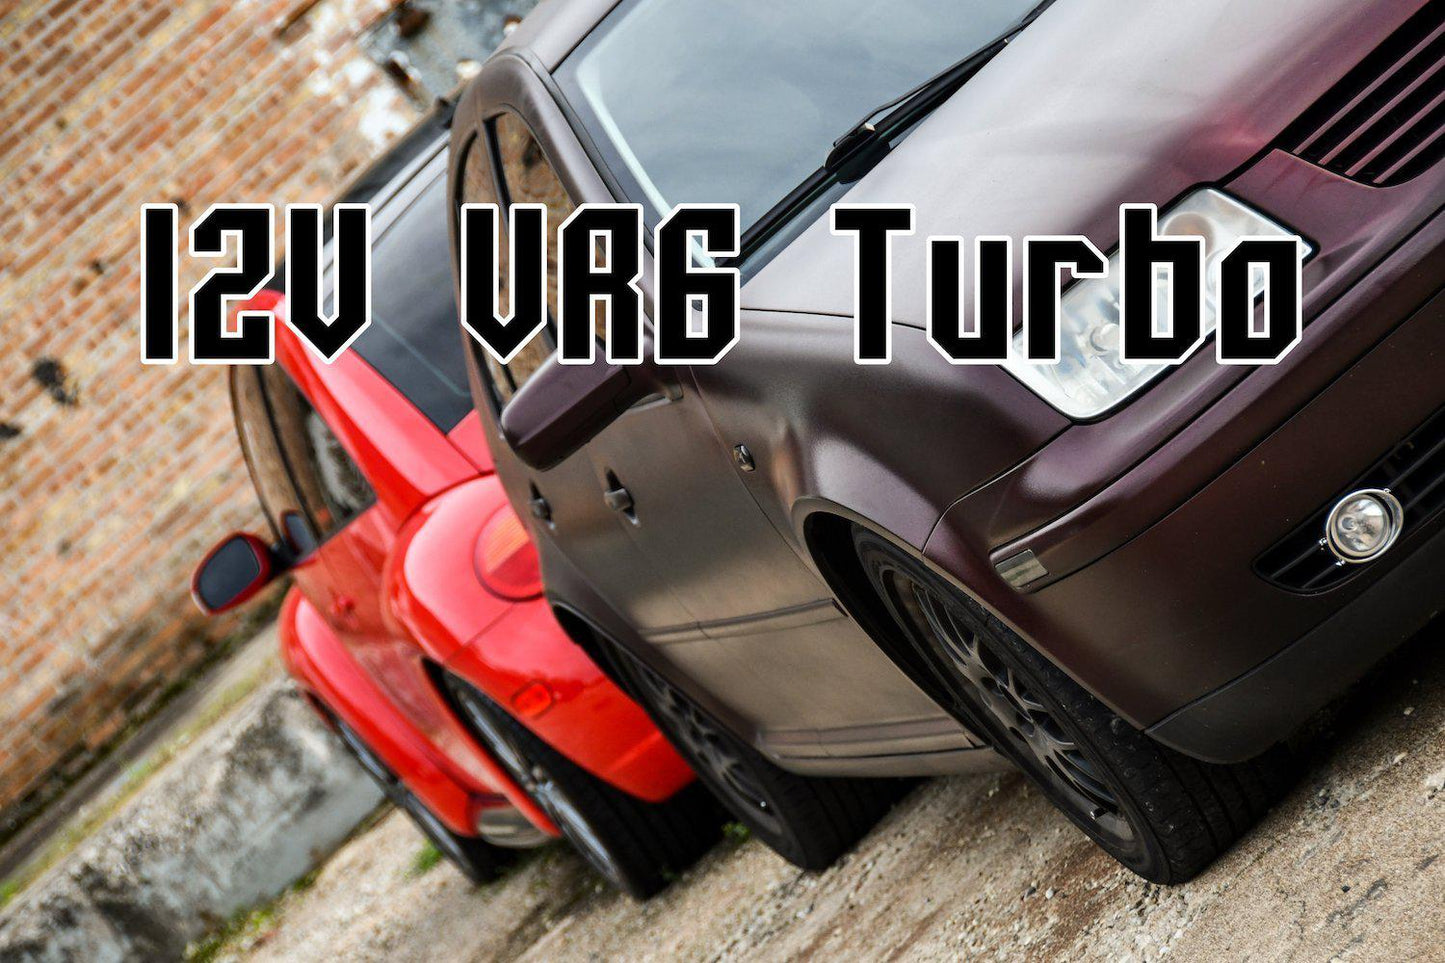 06a-technik - 12V VR6 Turbo Tune  Complete ECU - 